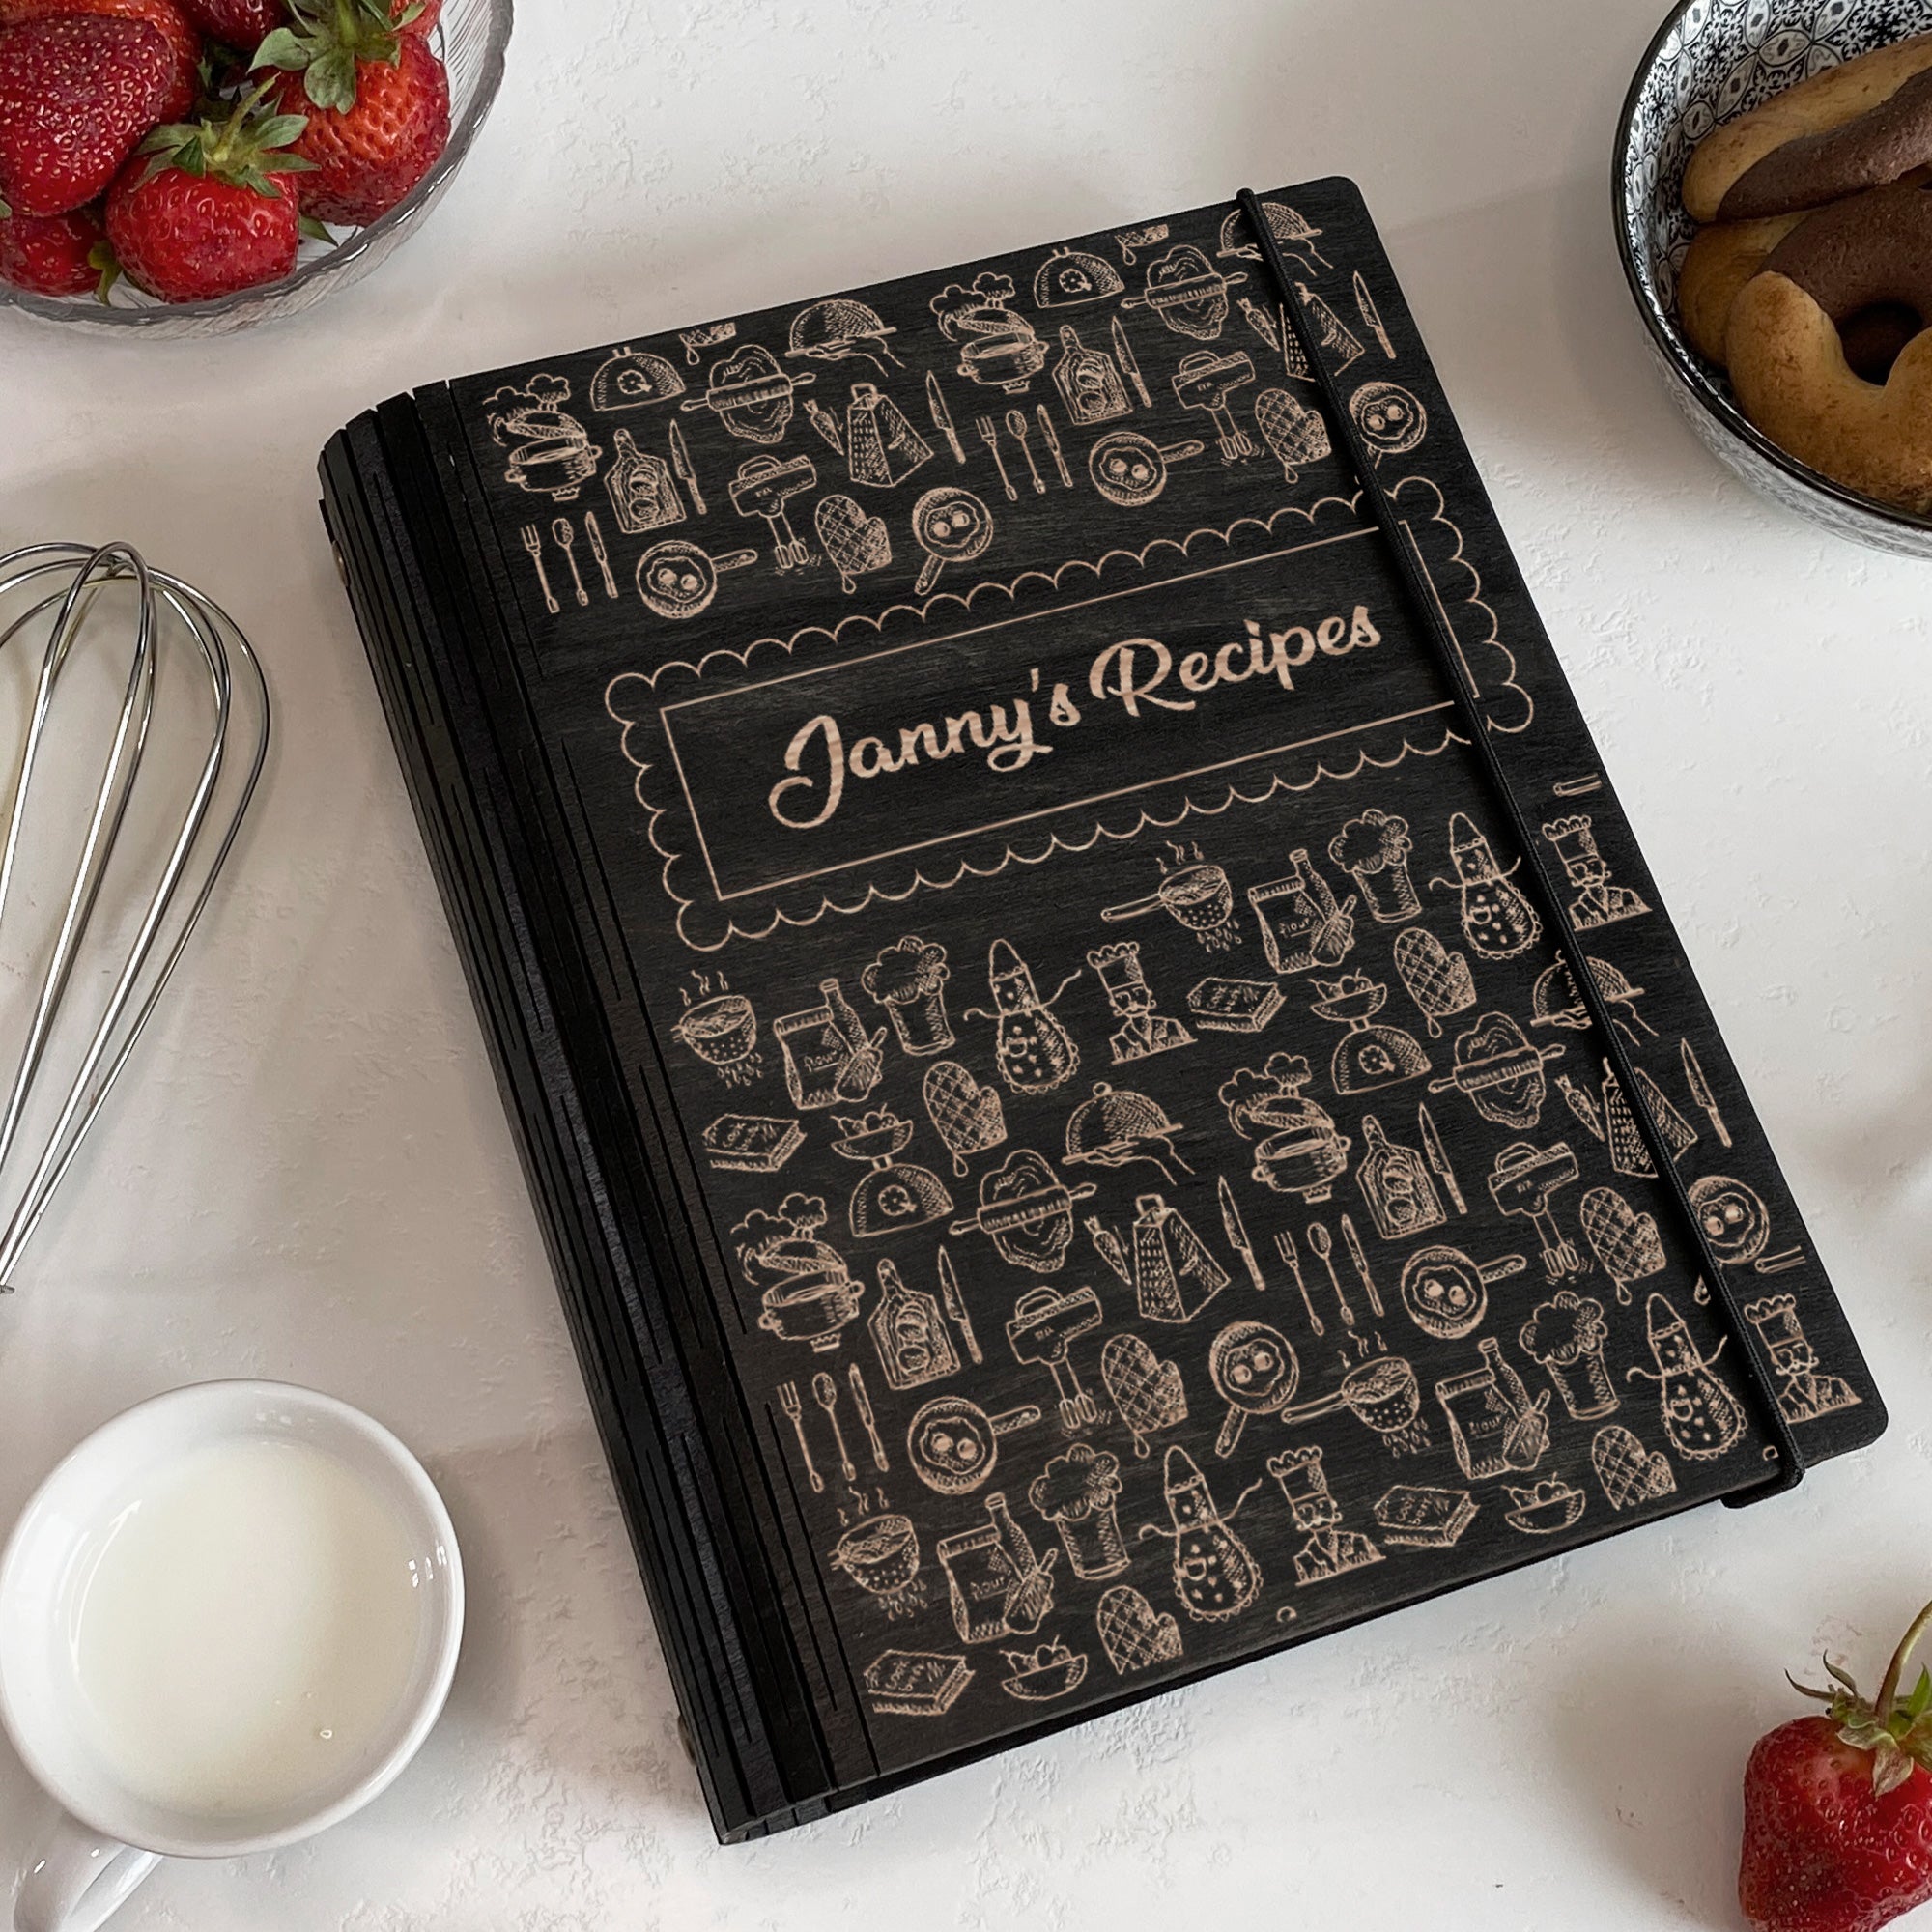 Family Home Recipes Book Free custom engraving